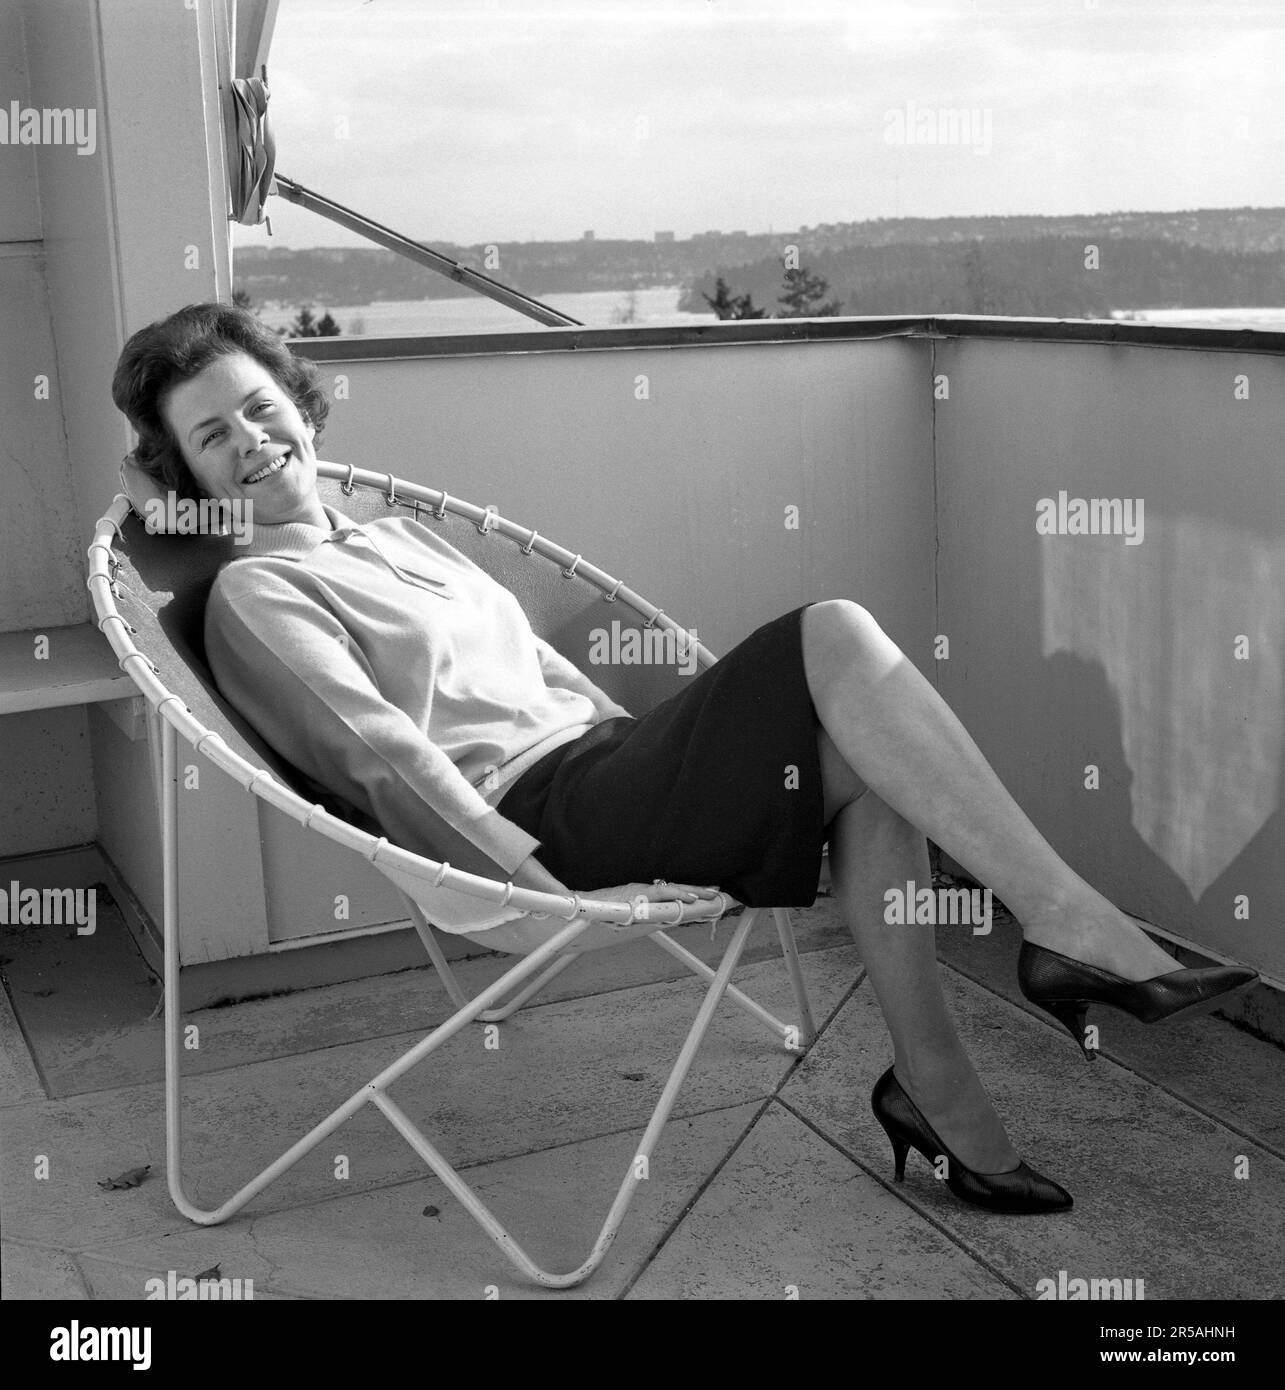 Décoration de la maison du 1960s. Une femme est assise confortablement dans la chaise de pont de 1950s 1960s conçu avec des tuyaux en acier avec un centre rond et quatre jambes. Le siège est en cuir. Un design populaire à l'époque avec de nombreuses variétés différentes, certaines plus connues que d'autres. Elle est actrice Sickan Carlsson 1915-2011 dans à la maison sur le balcon. Suède 1964 Banque D'Images